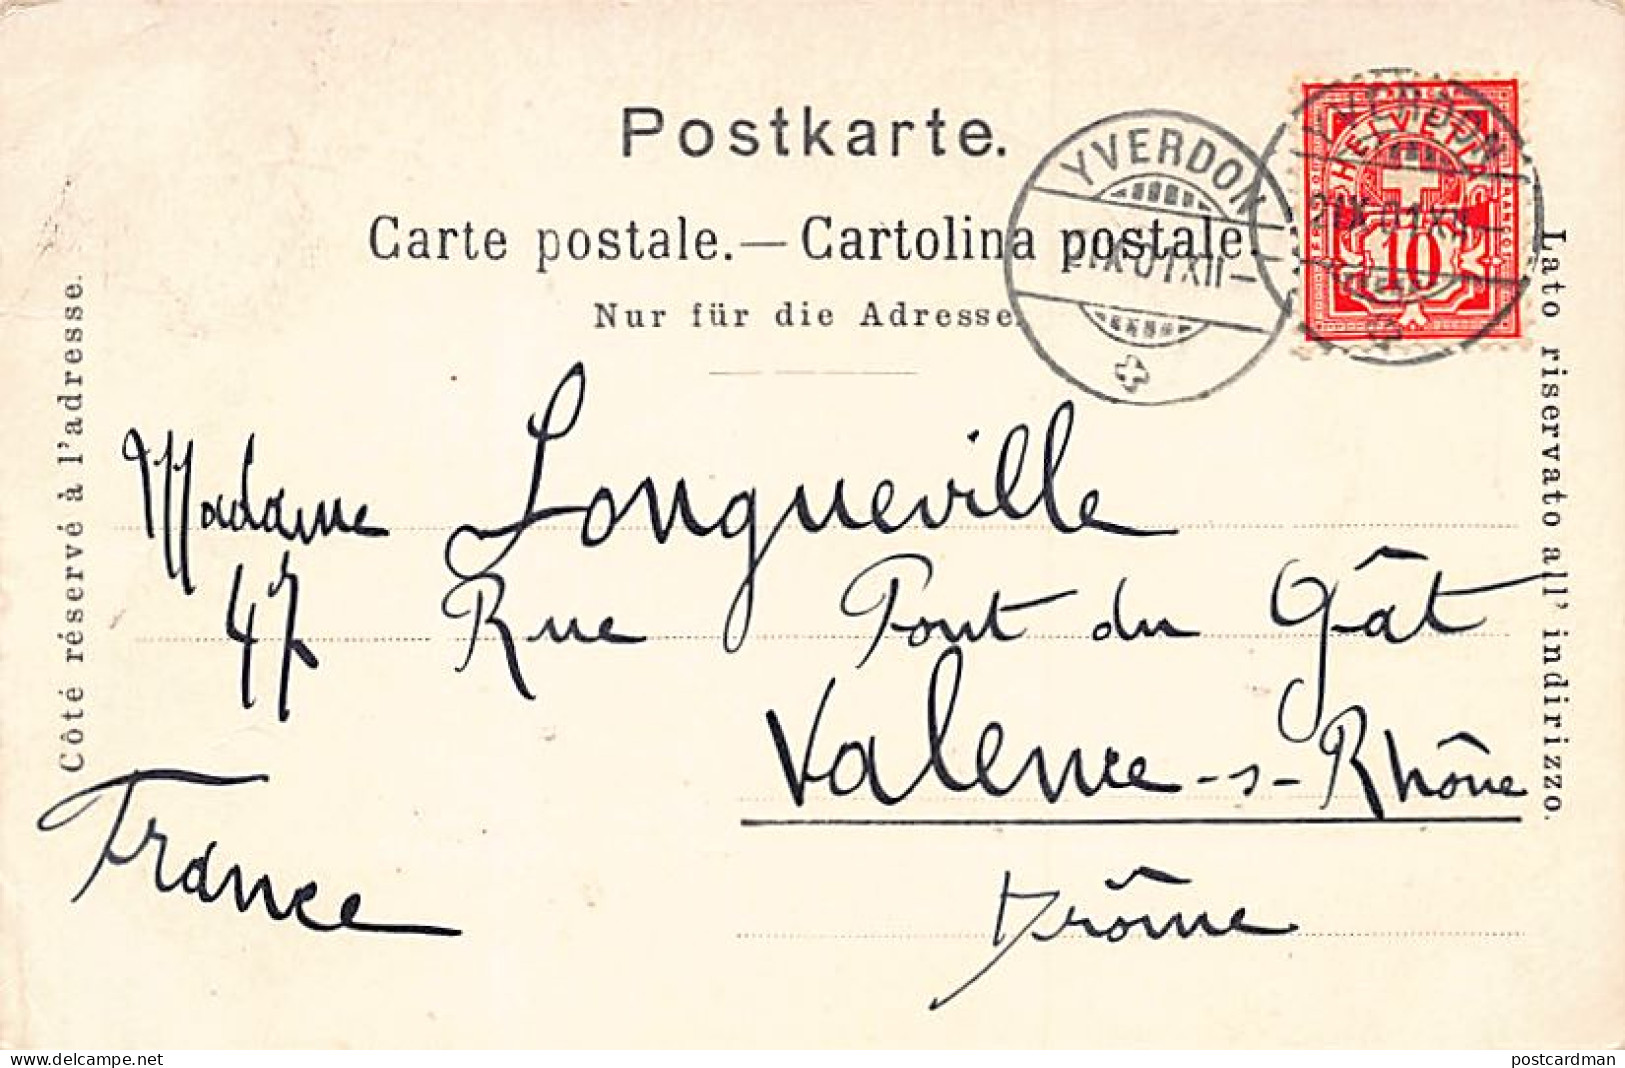 Suisse - YVERDON (VD) Souvenir Du Tir Cantonnal Vaudois - Année 1899 - Ed. Corbaz - Yverdon-les-Bains 